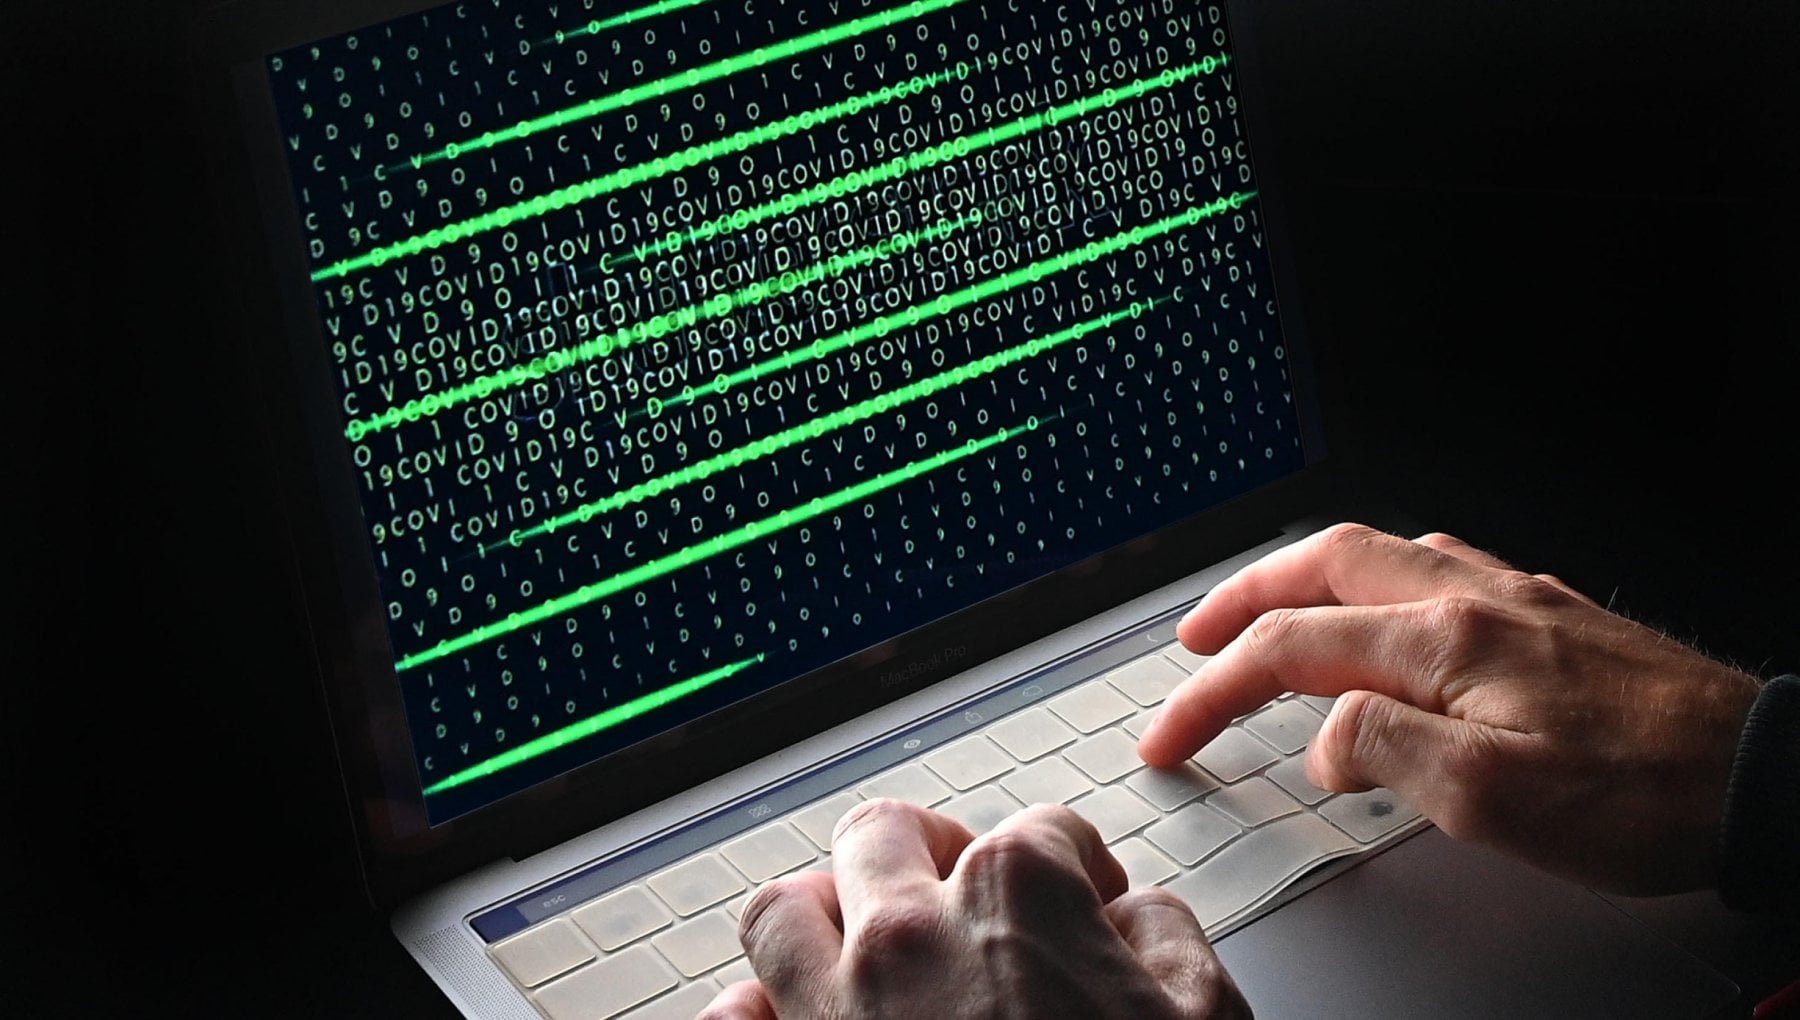 Attacchi hacker russi, l’Agenzia per la cybersicurezza: «Troppo difficile riuscire a reagire. Vanno migliorate le difese»